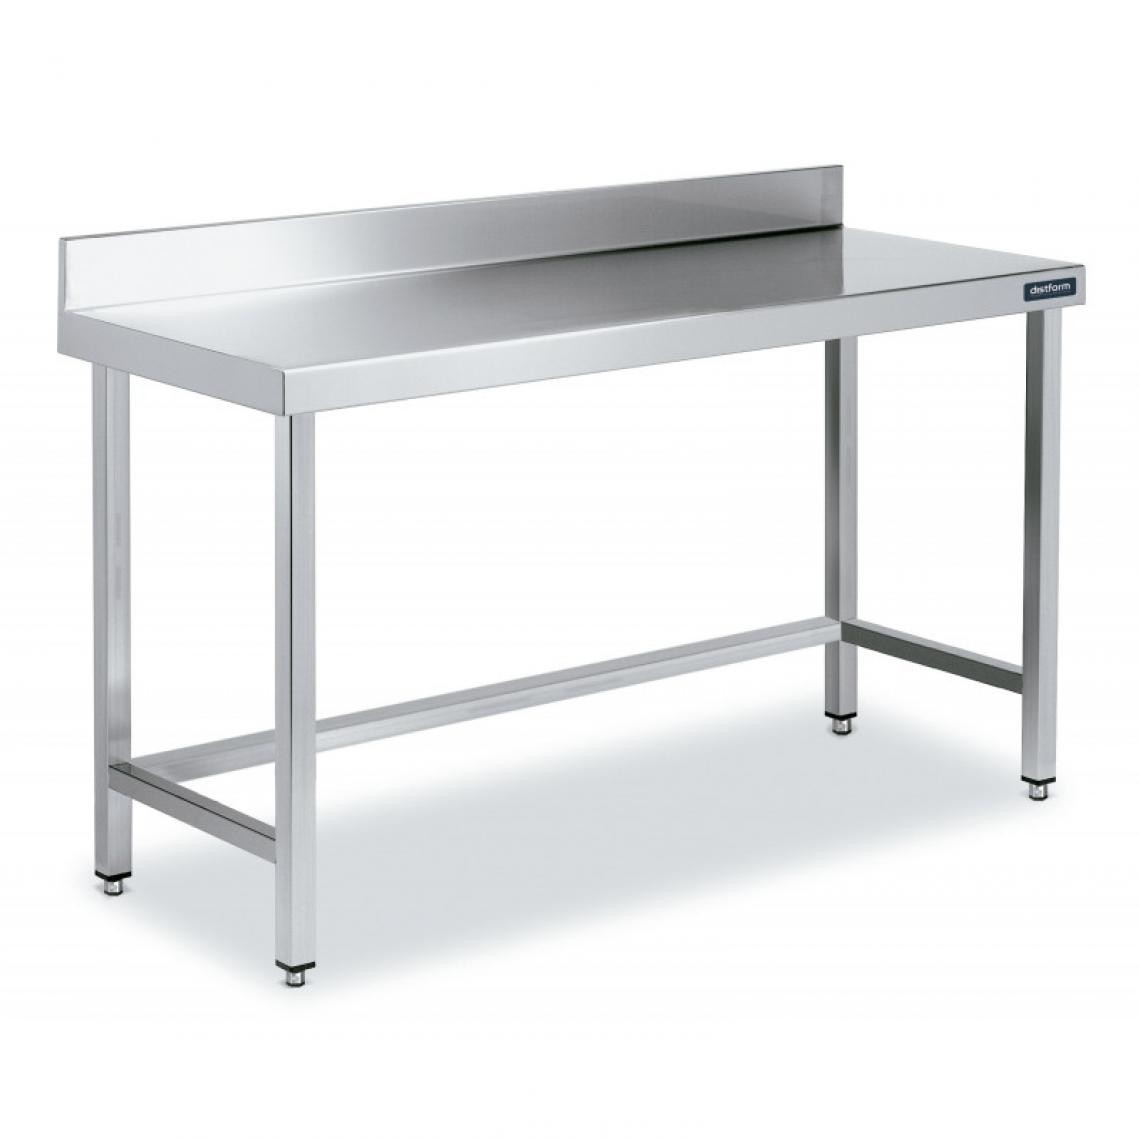 DISTFORM - Table Adossée en Inox avec Renforts Profondeur 700 mm - Distform - Acier inoxydable700x700 - Tables à manger